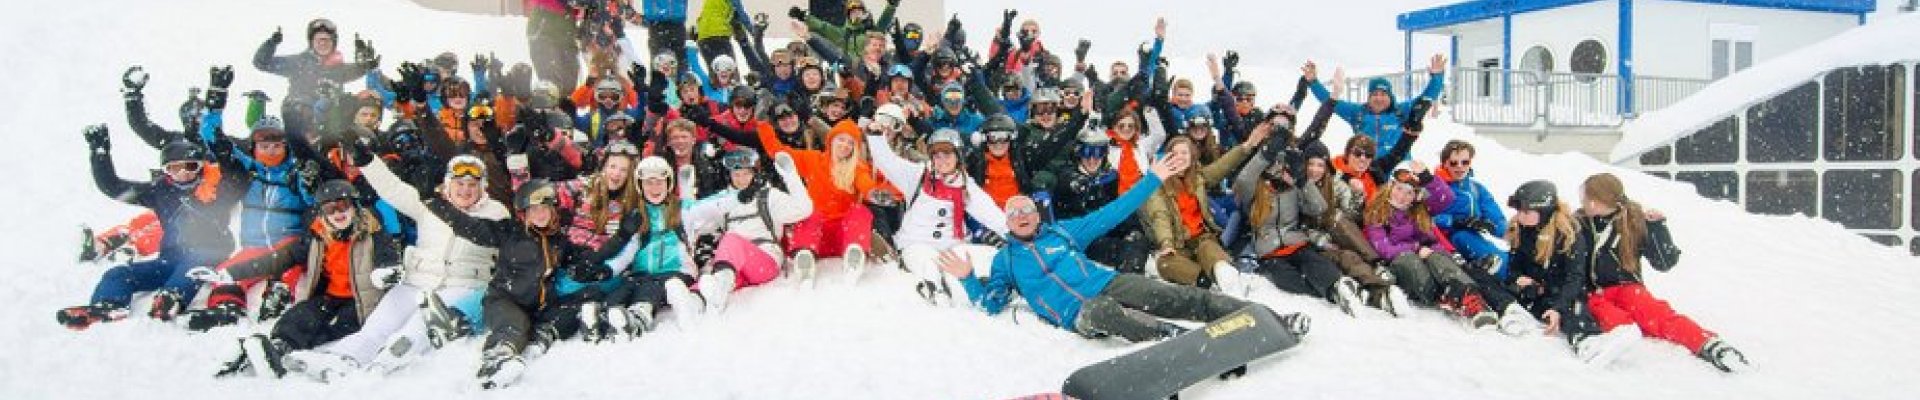 Schoolreis wintersport Oostenrijk